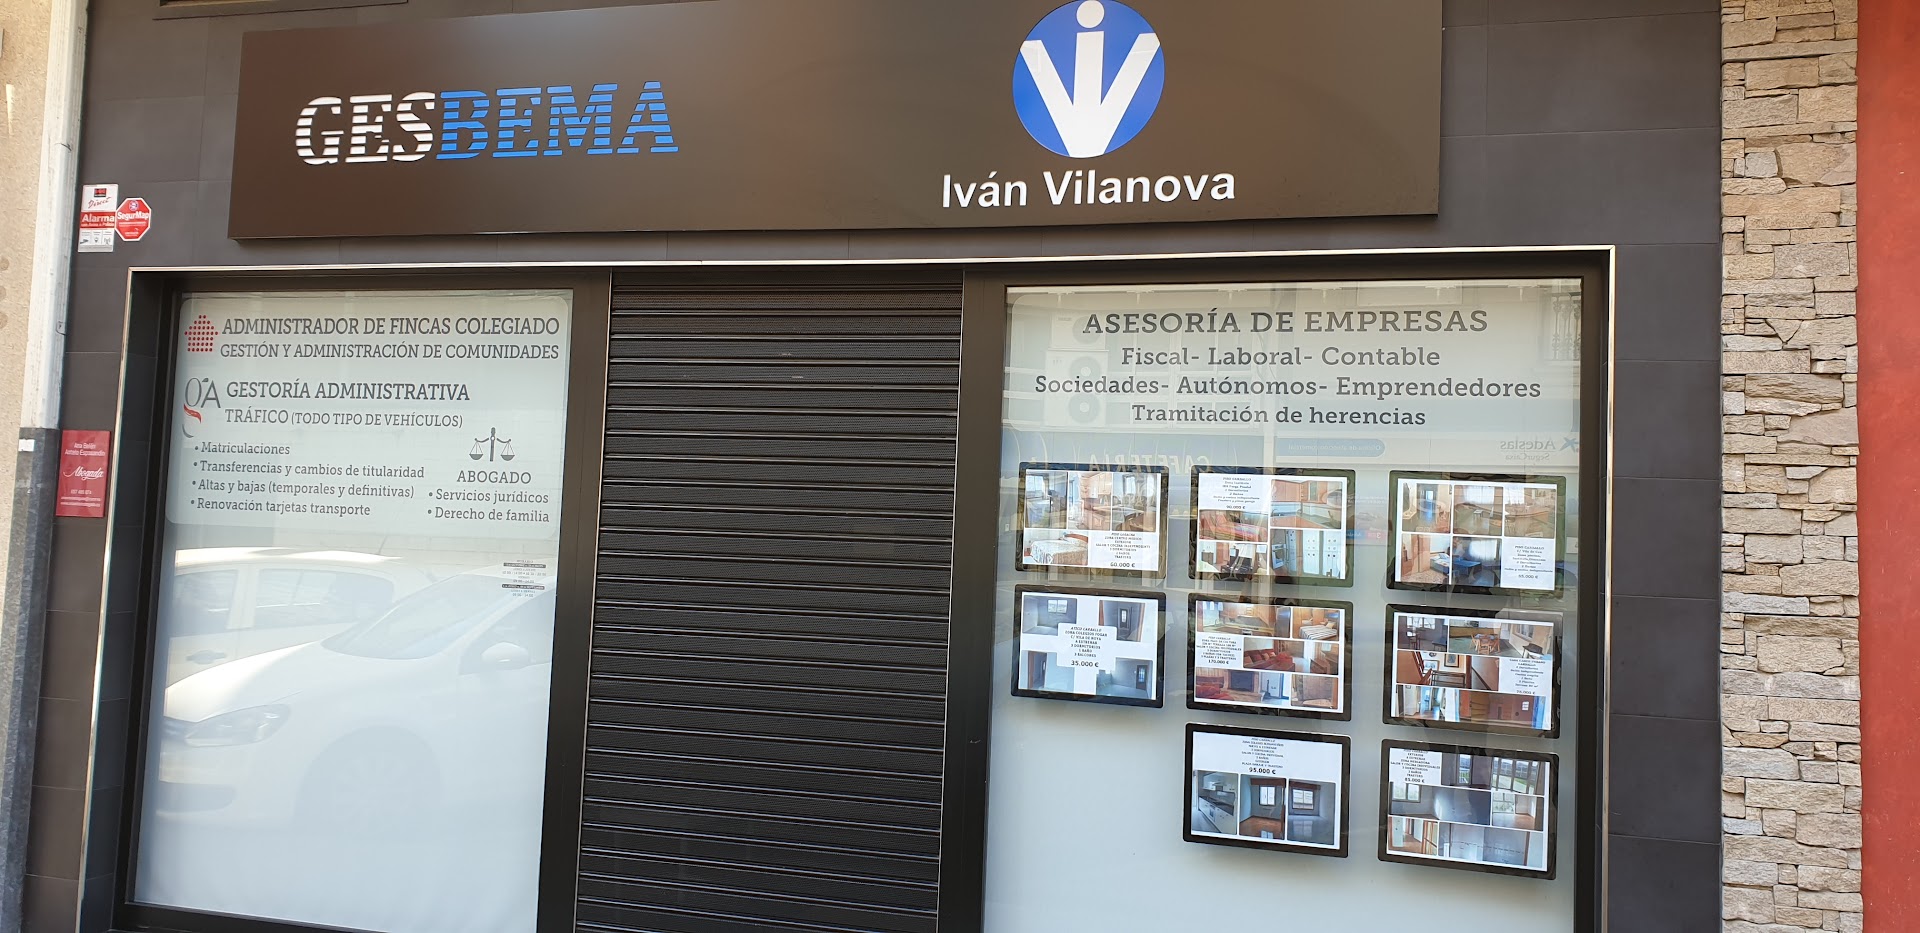 Ivan Vilanova, Asesoria de Empresas (Soc-5 Consultoría De Empresas)